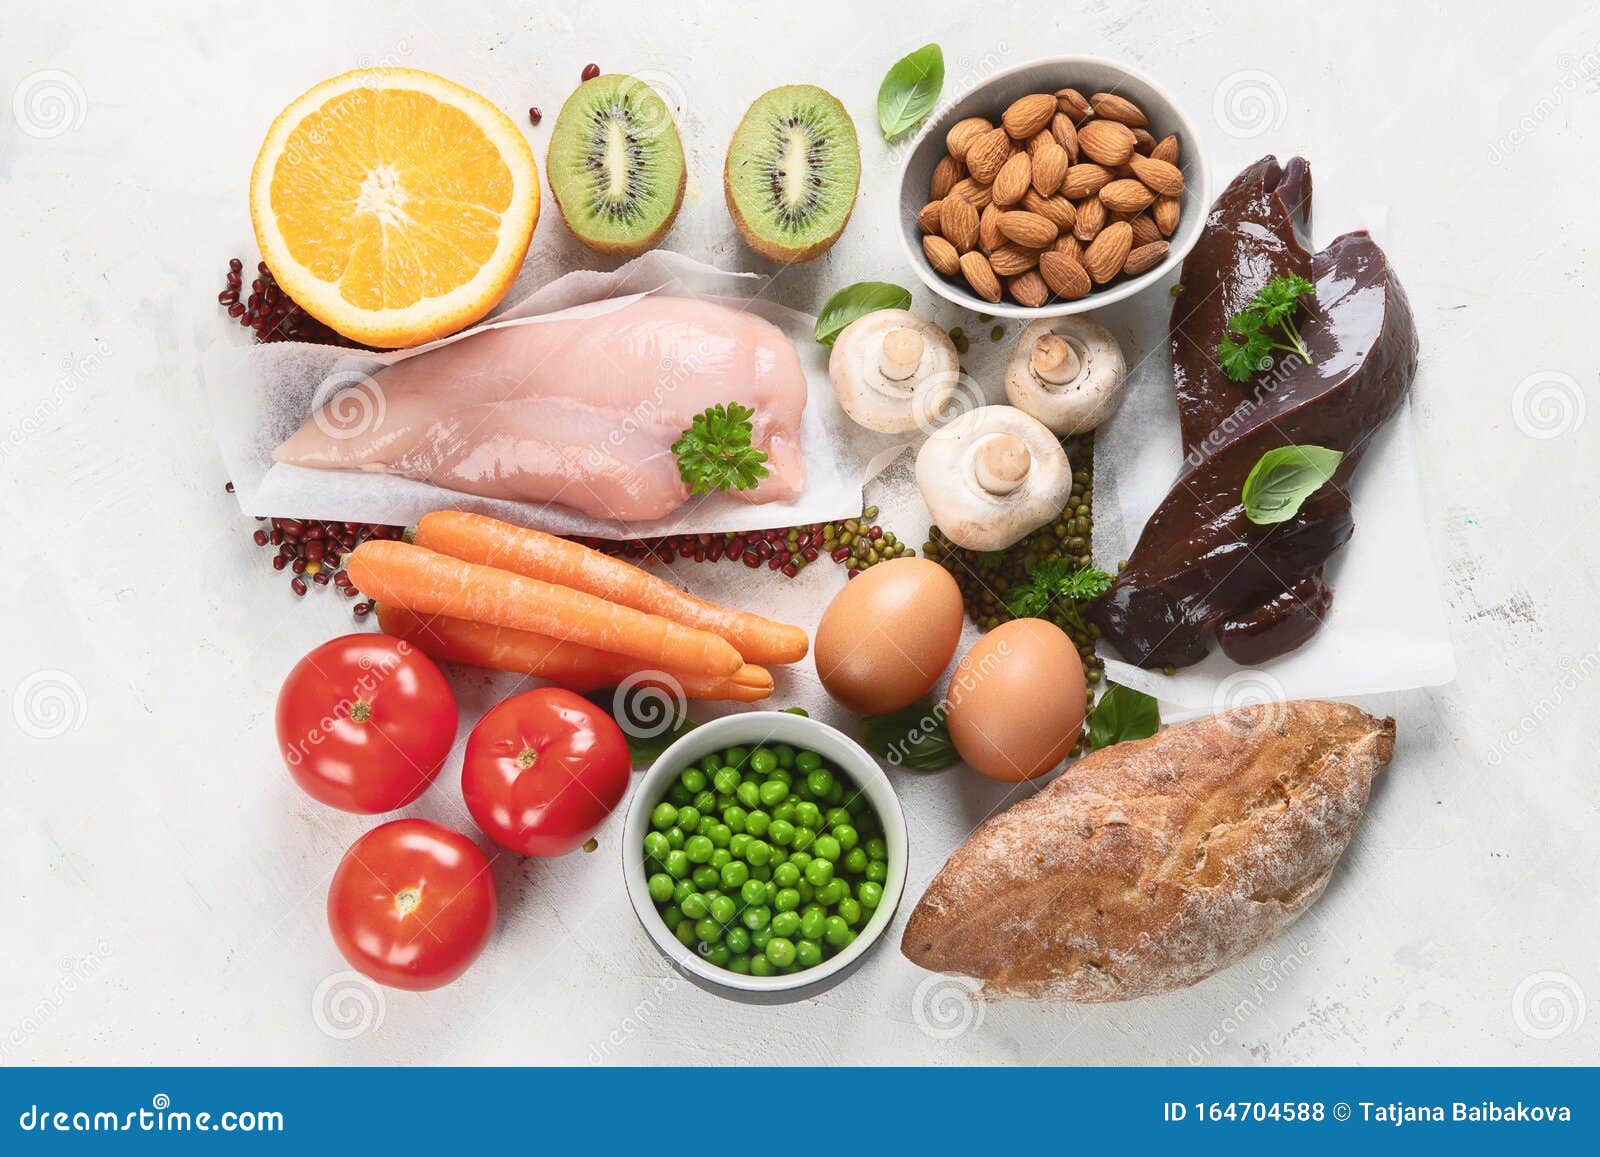 Foods High in Niacin -Vitamin B3 Stock Photo - Image of bread, kiwi ...